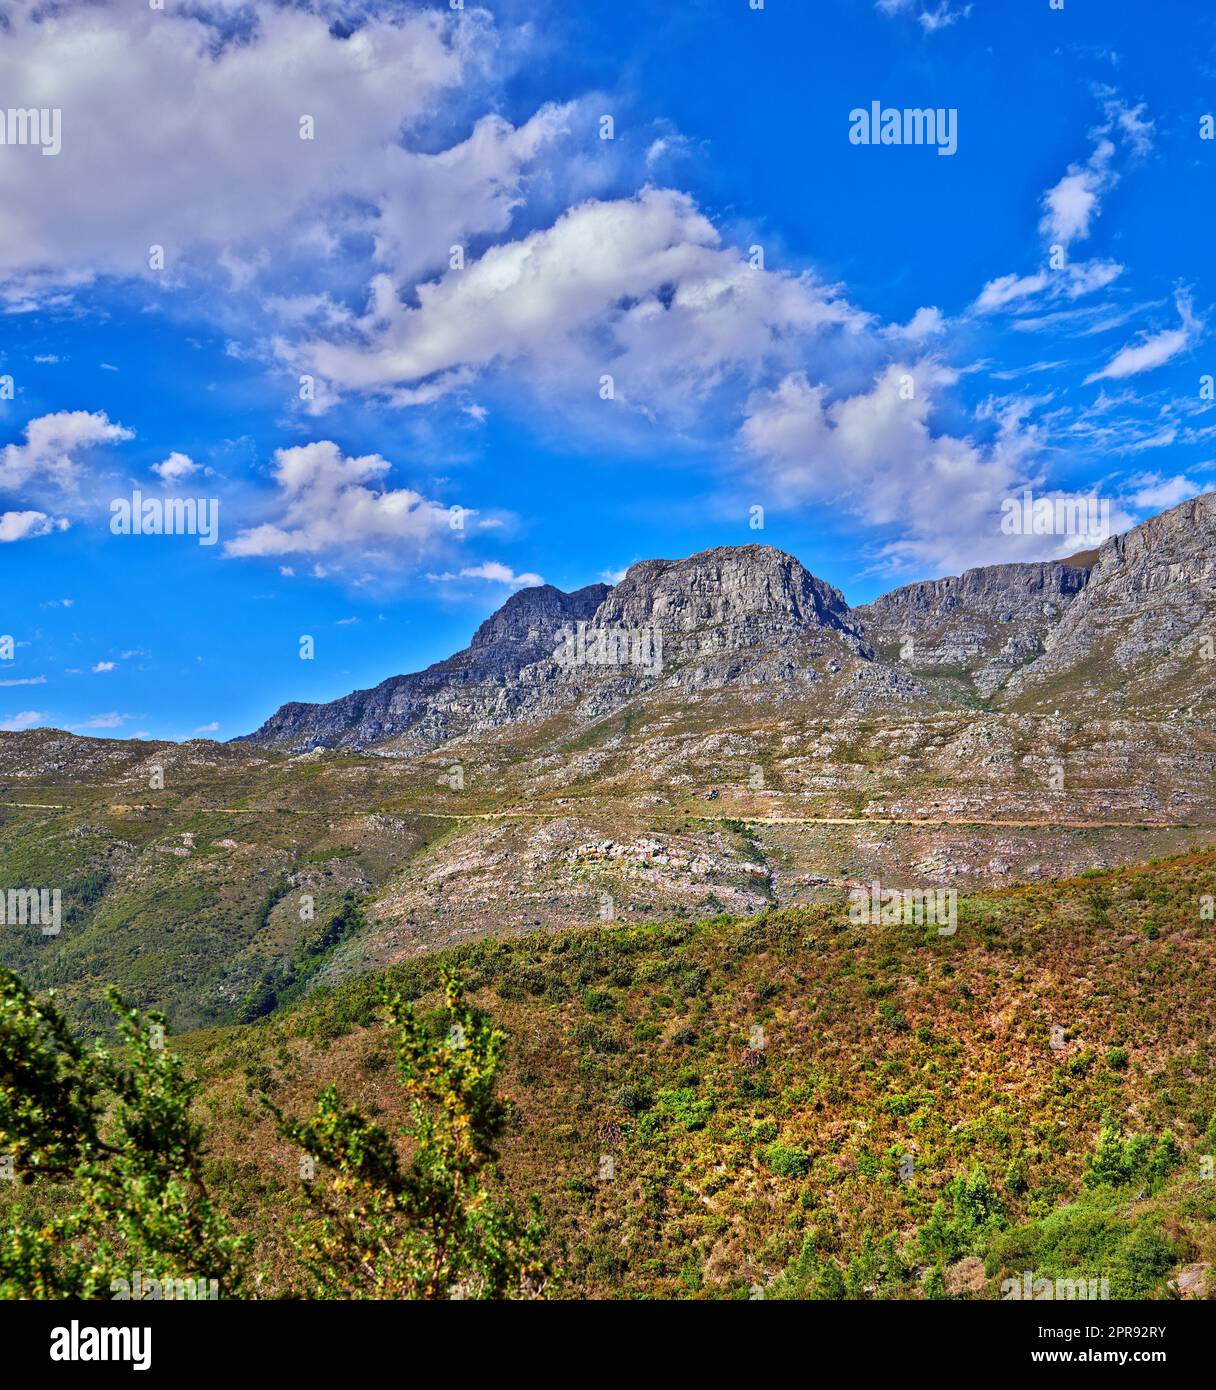 Splendida montagna in una tranquilla terra rocciosa in una giornata di sole a città del Capo. Terra vivace con lussureggianti cespugli verdi e piante che crescono in armonia con la natura. Rilassanti e rilassanti vedute del Sud Africa Foto Stock